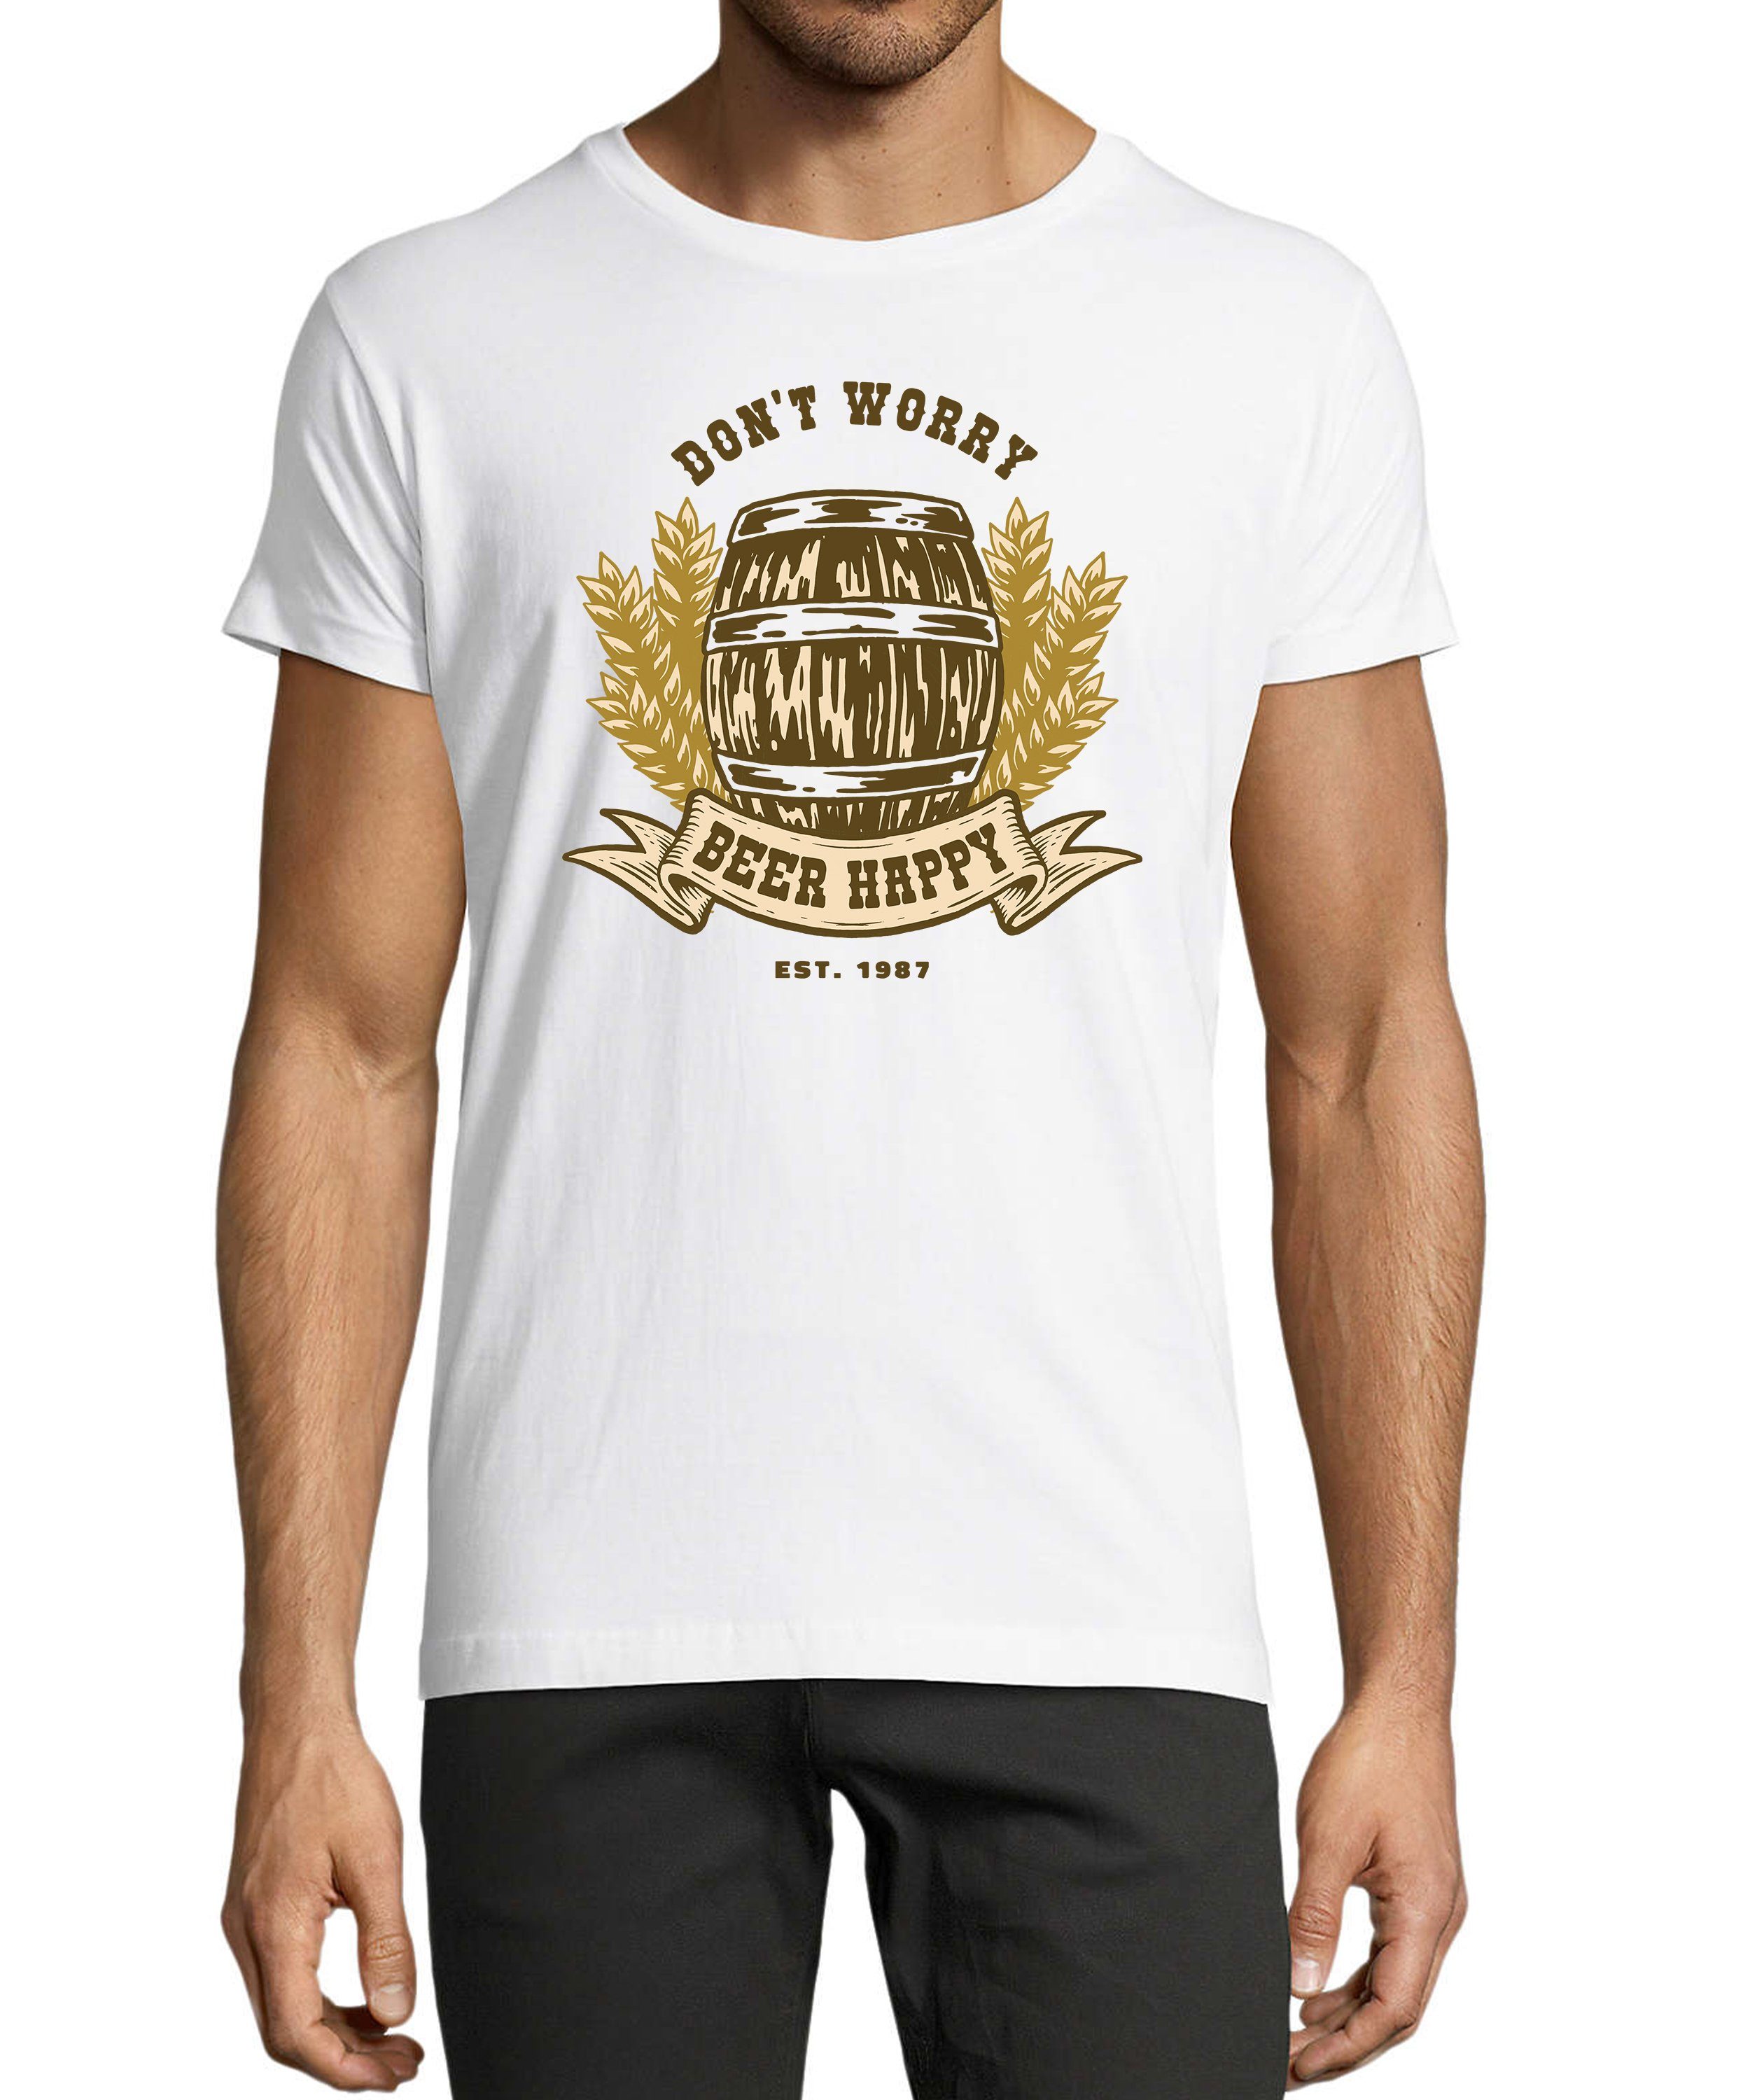 MyDesign24 T-Shirt Herren Oktoberfest Shirt - Bierfass print mit Spruch Baumwollshirt mit Aufdruck Regular Fit, i301 weiss